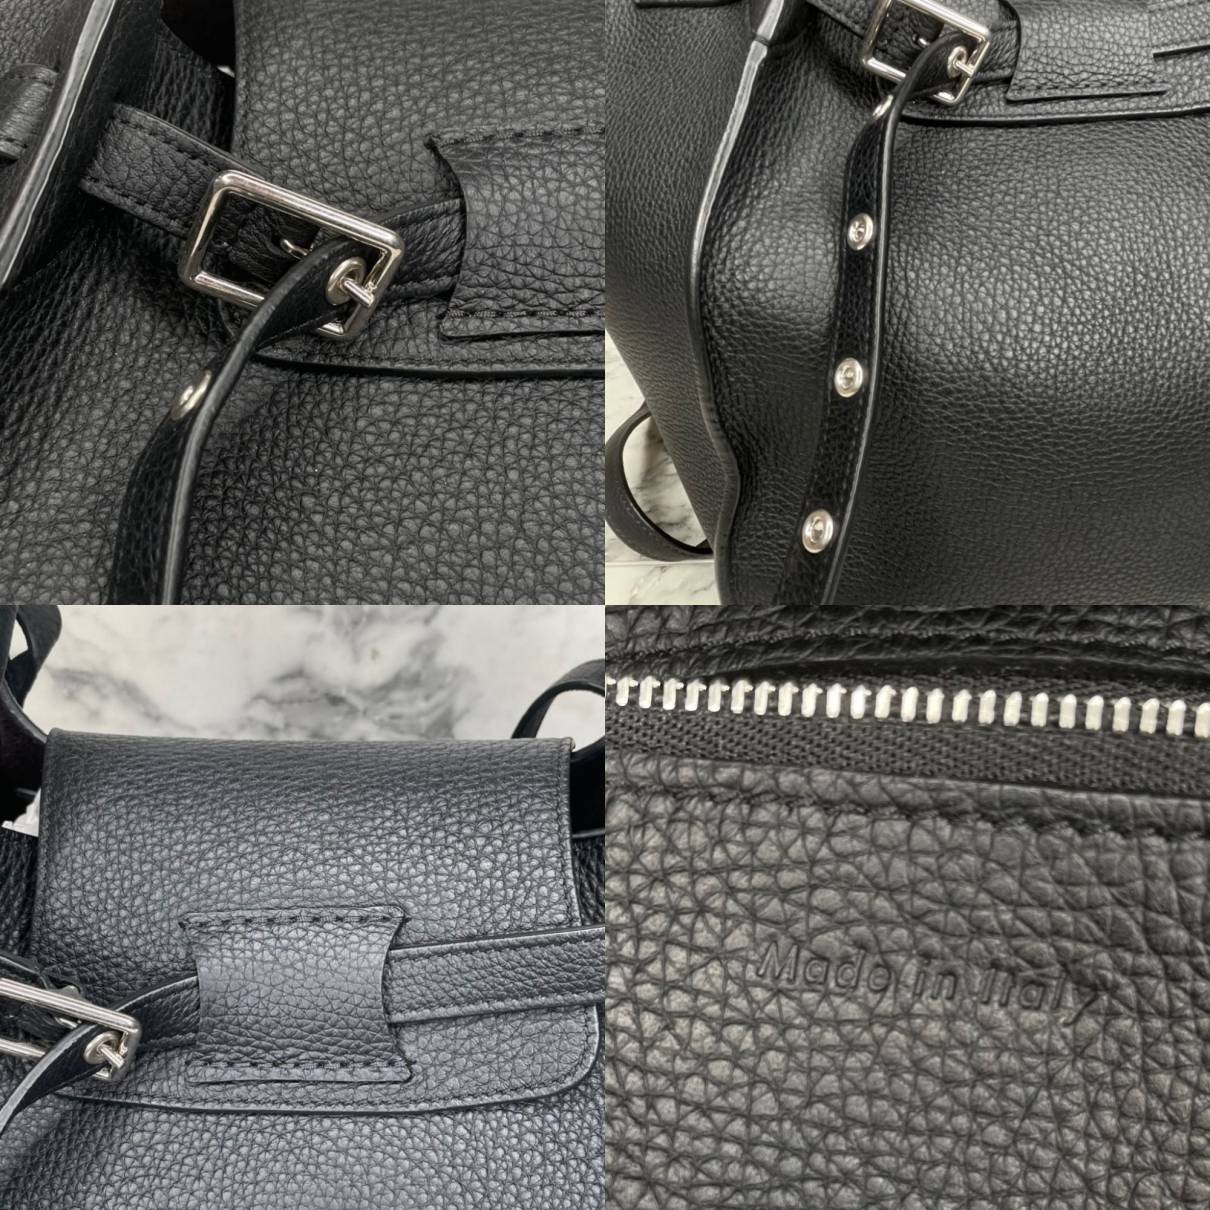 Leather handbag Celine Black in Leather - 34679198